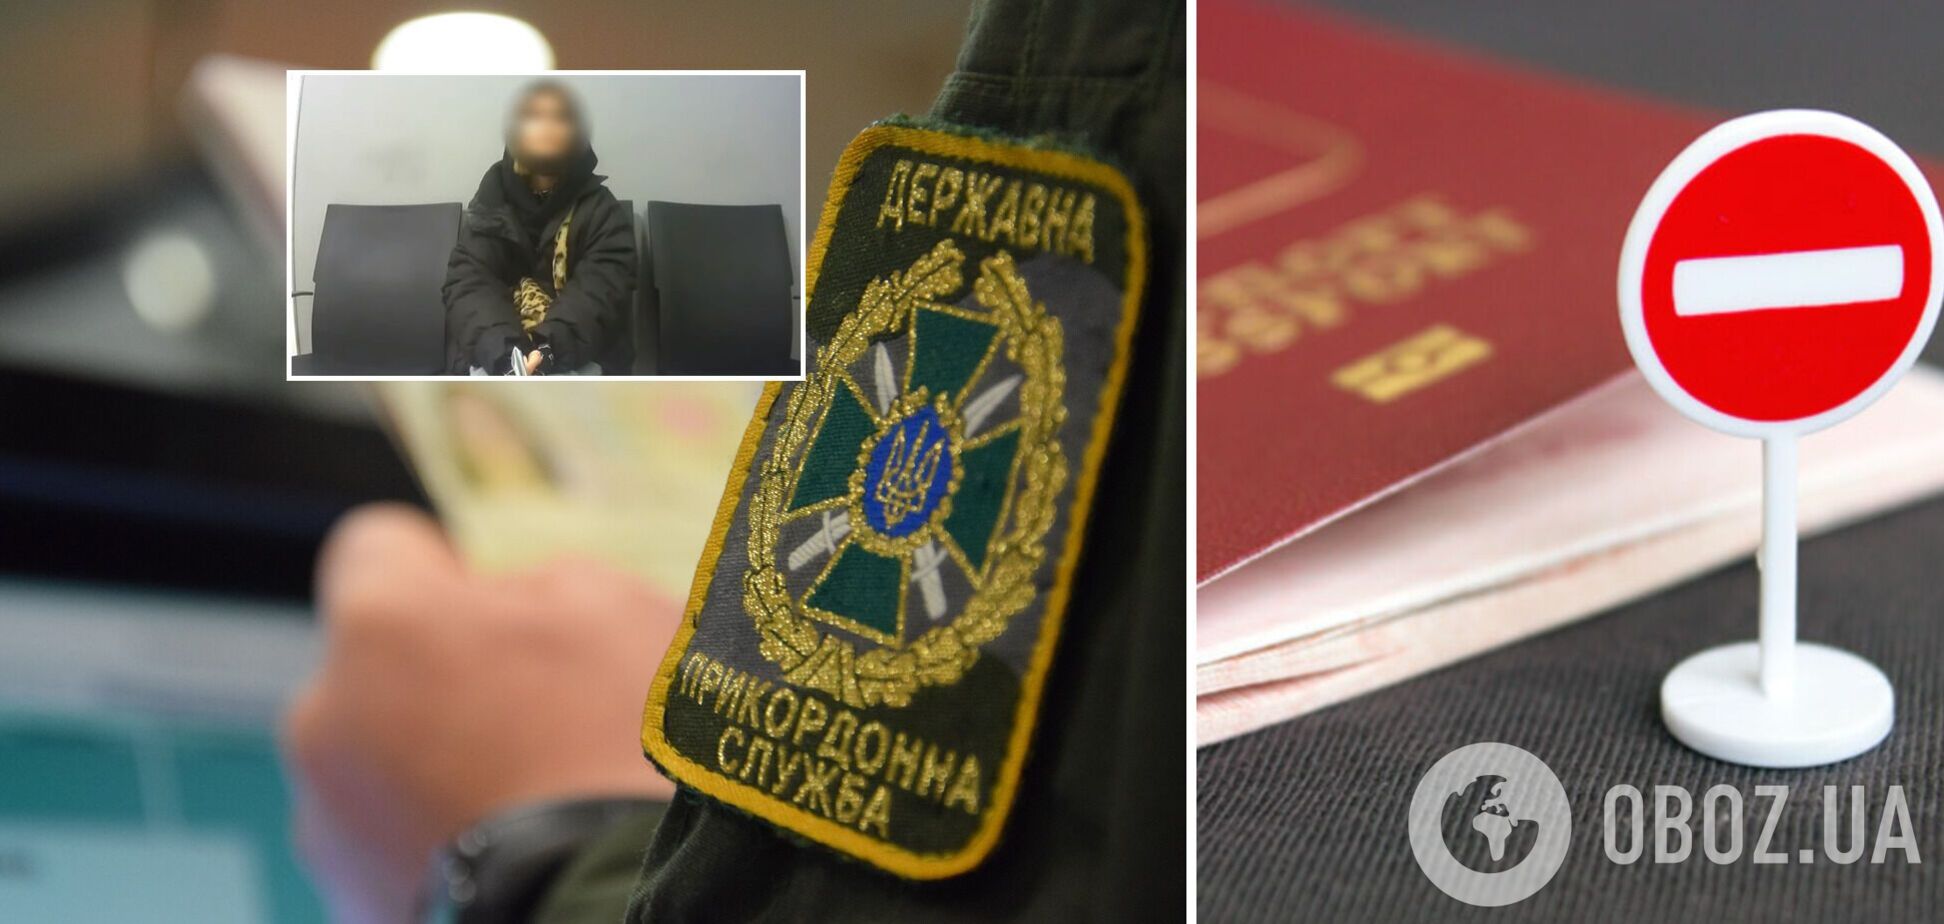 Модели из России, работавшей в оккупированном Крыму, запретили въезд в Украину: детали